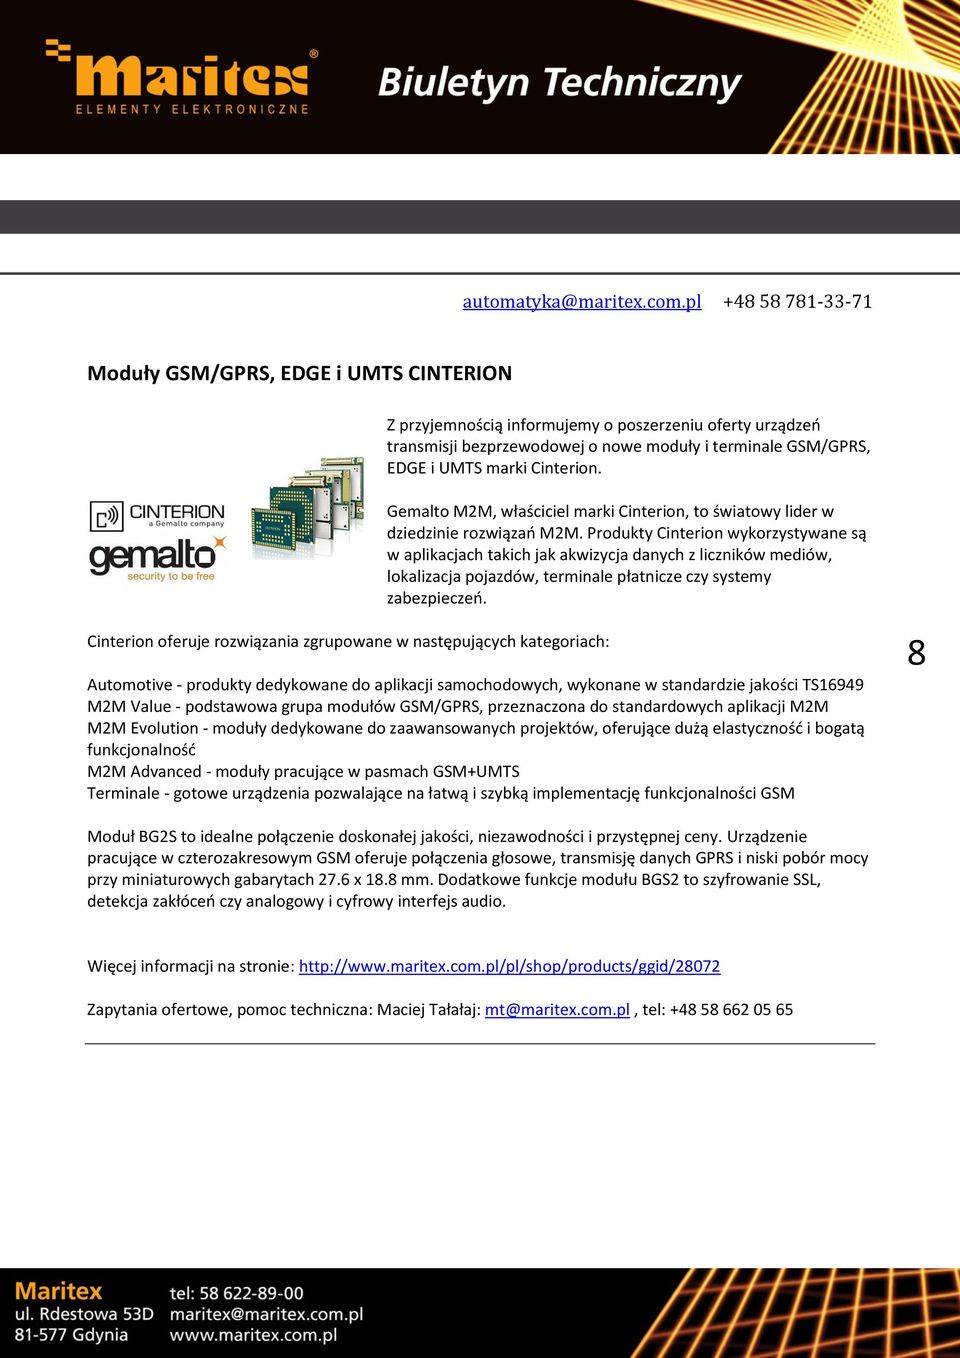 Cinterion. Gemalto M2M, właściciel marki Cinterion, to światowy lider w dziedzinie rozwiązań M2M.